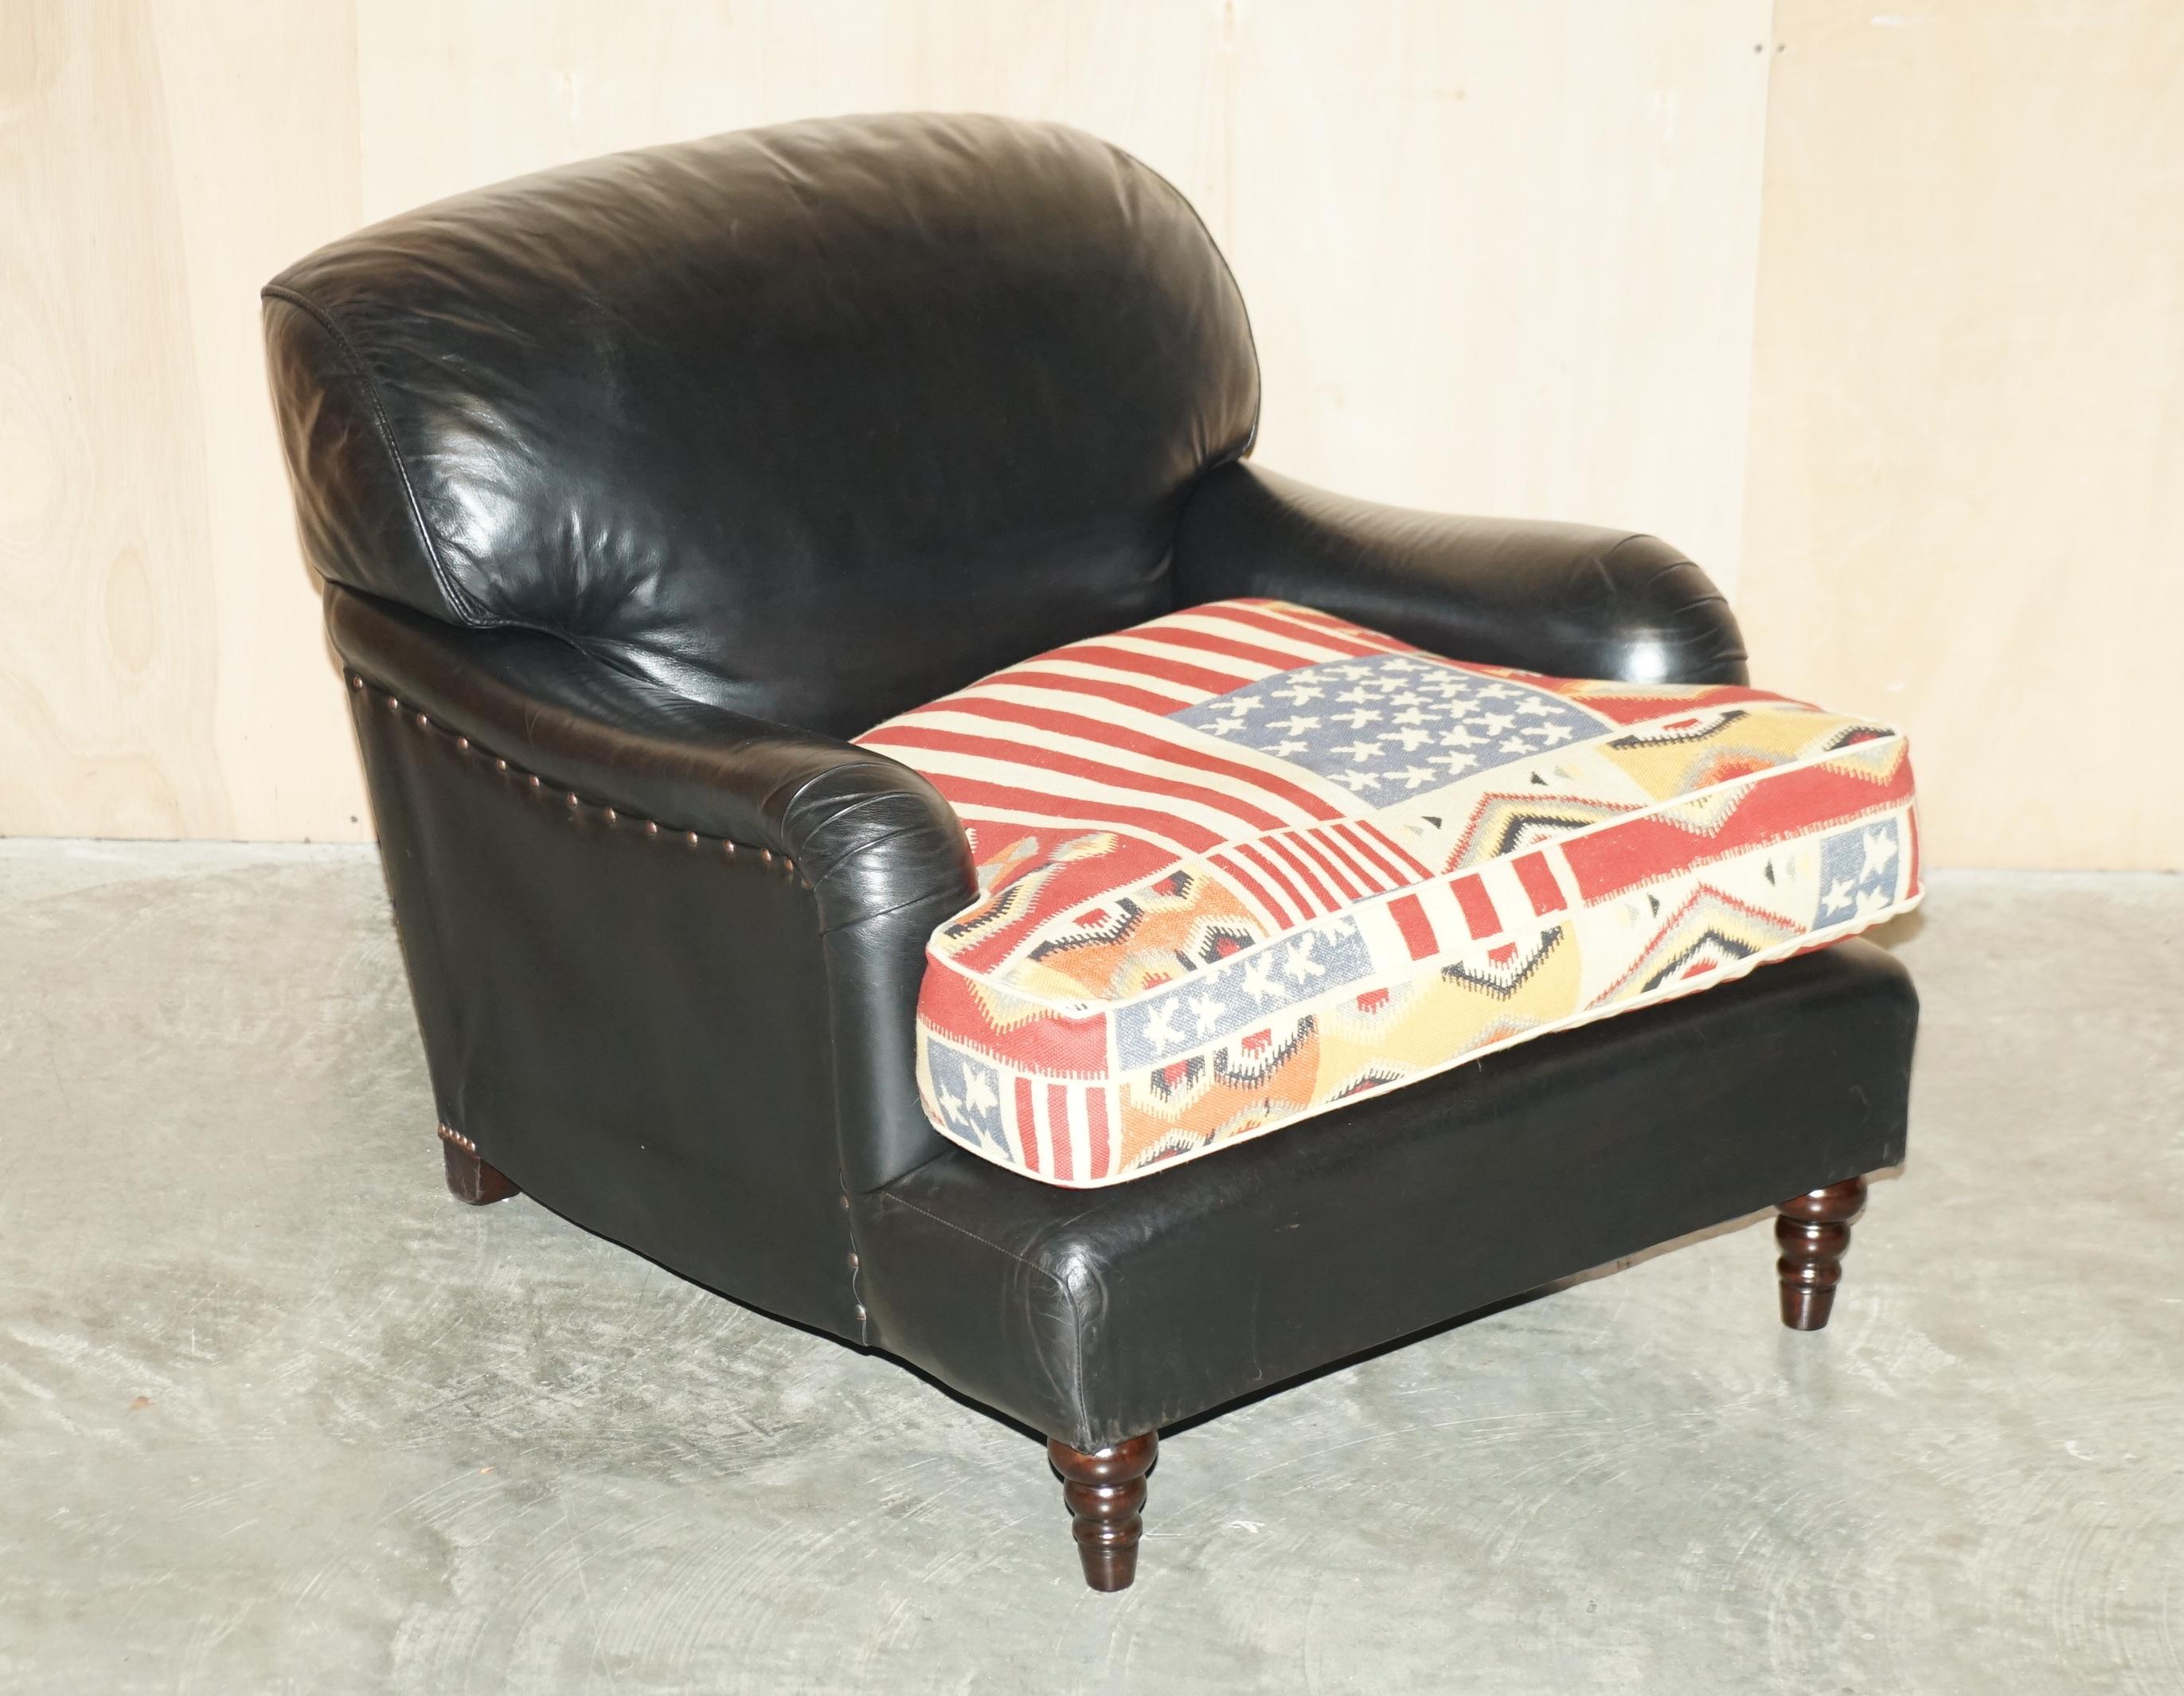 Nous sommes ravis de proposer à la vente ce fauteuil de style standard fabriqué à la main en Angleterre par George Smith Signature, avec un coussin d'assise Kilim en forme de drapeau américain et un revêtement en cuir noir.

Un très beau fauteuil